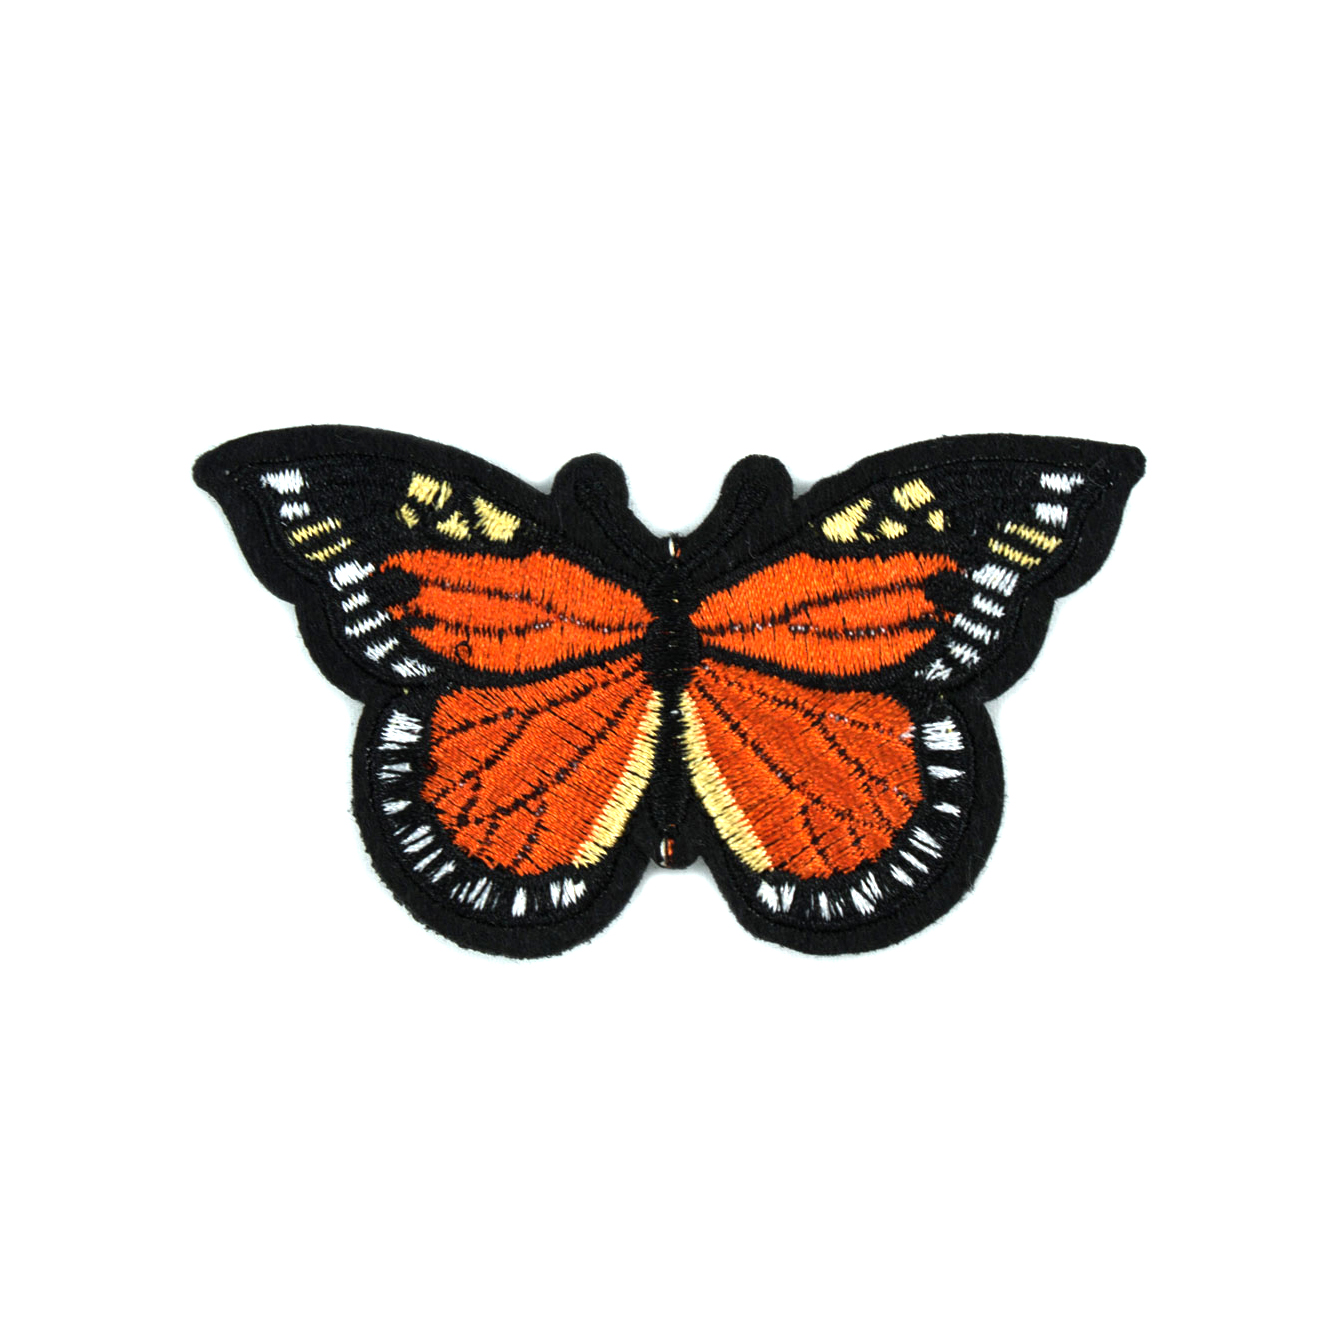 Нашивка тканевая Бабочка Монарх 8,5*5,3см, оранжевый, белый, желтый, черный. Нашивка Вышивка